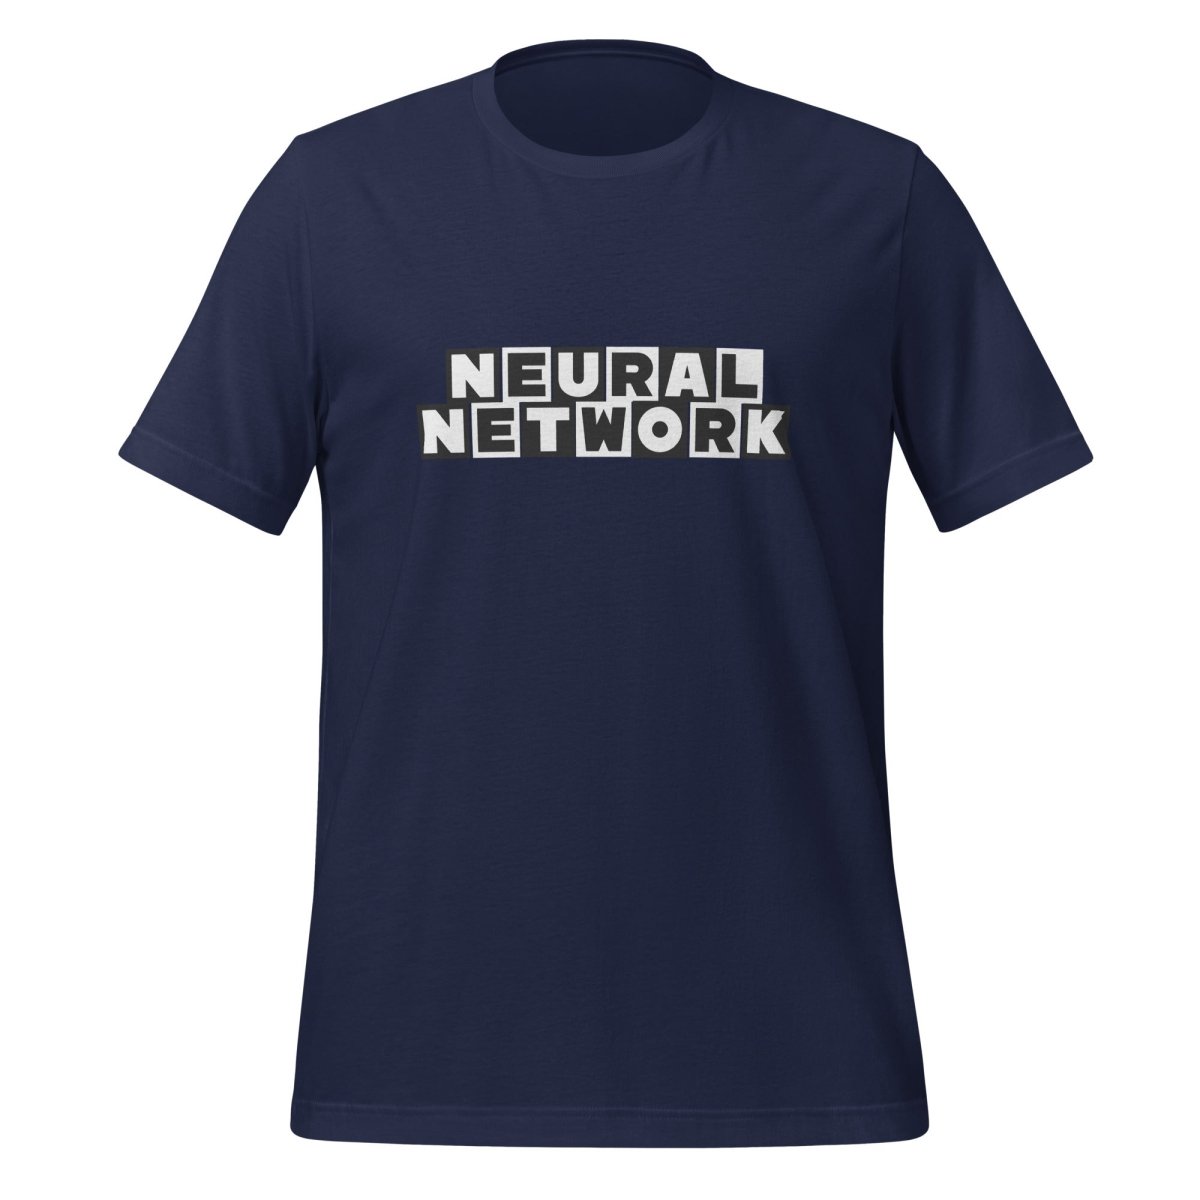 NEURAL NETWORK T - Shirt (unisex) - Navy - AI Store